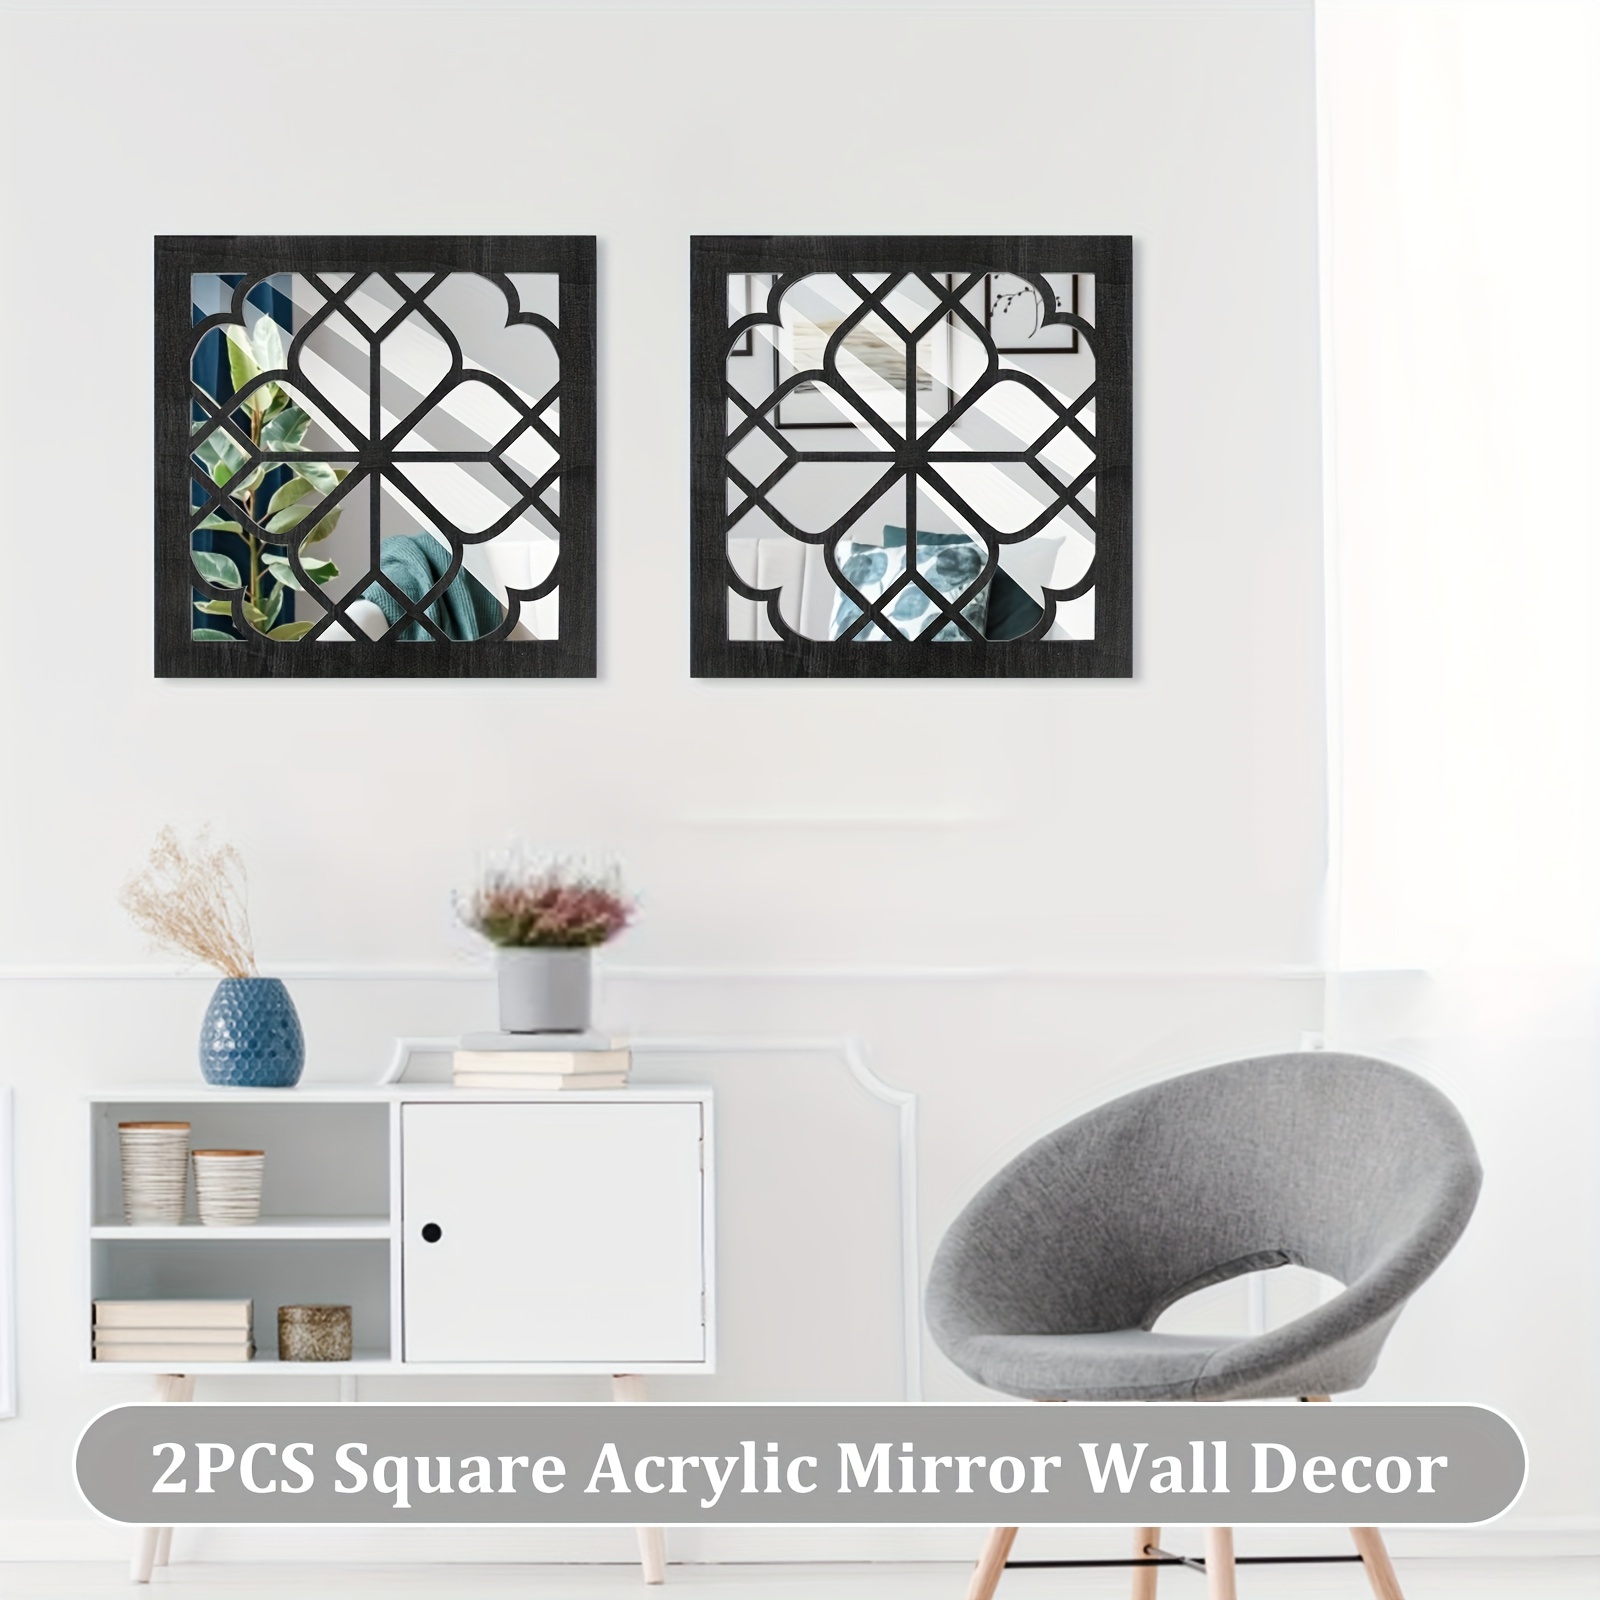 Square Wall Mirrors & Square Mirror Wall Decor